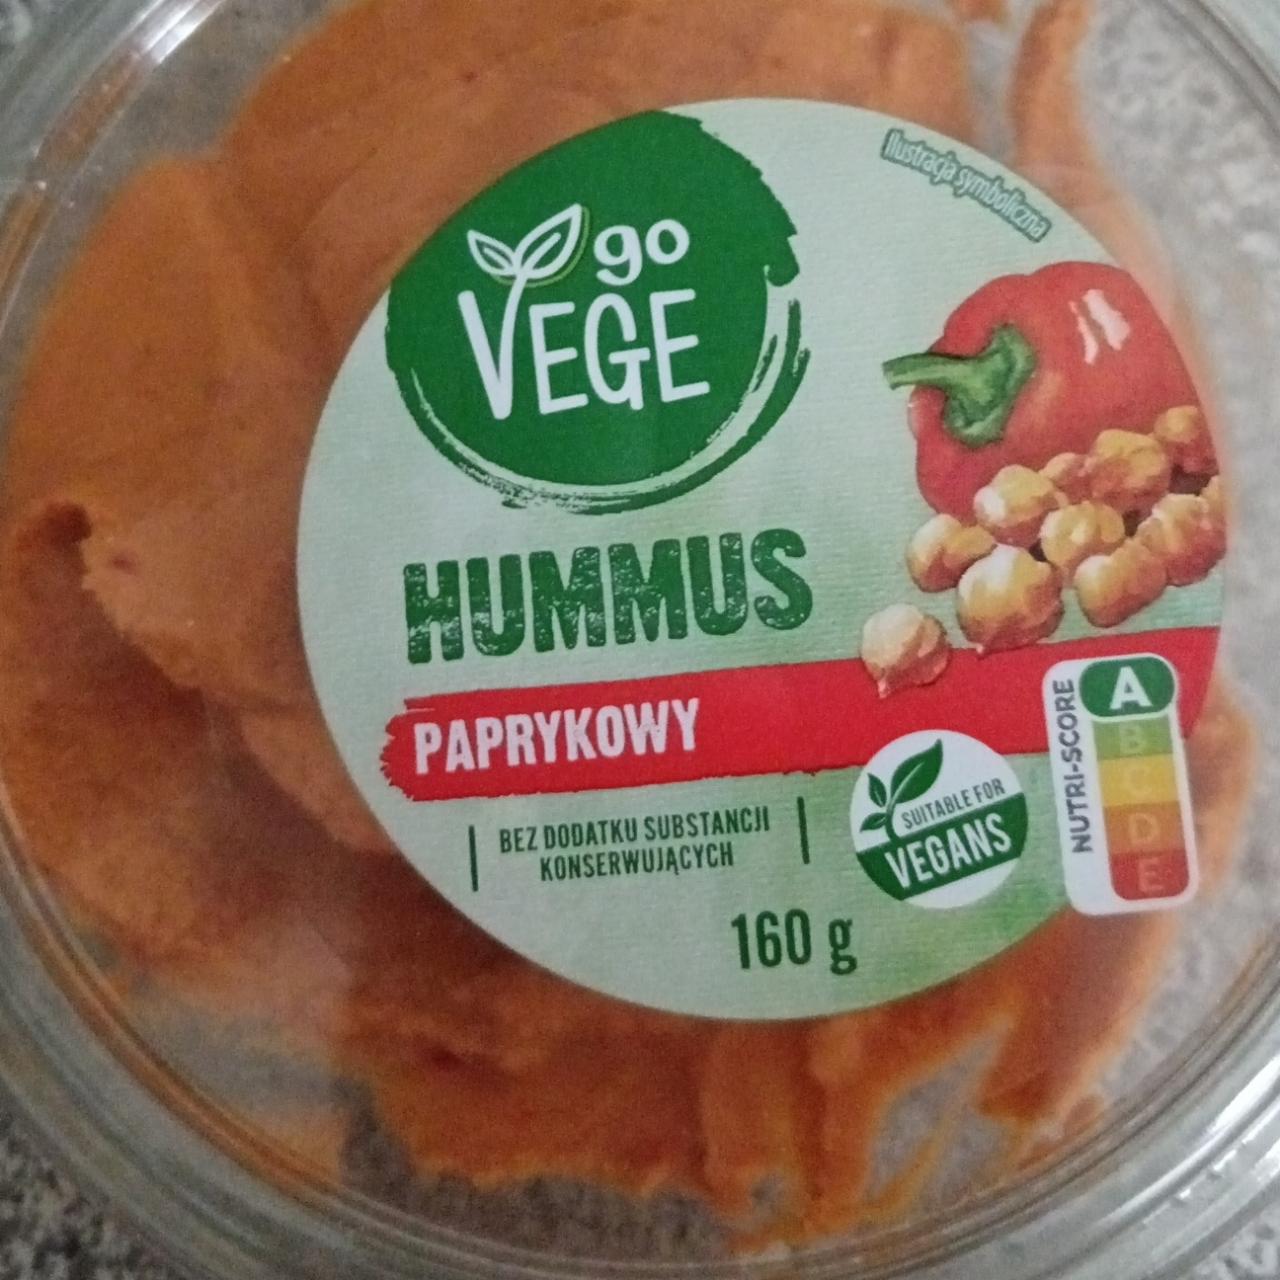 Fotografie - Hummus paprykowy Go Vege